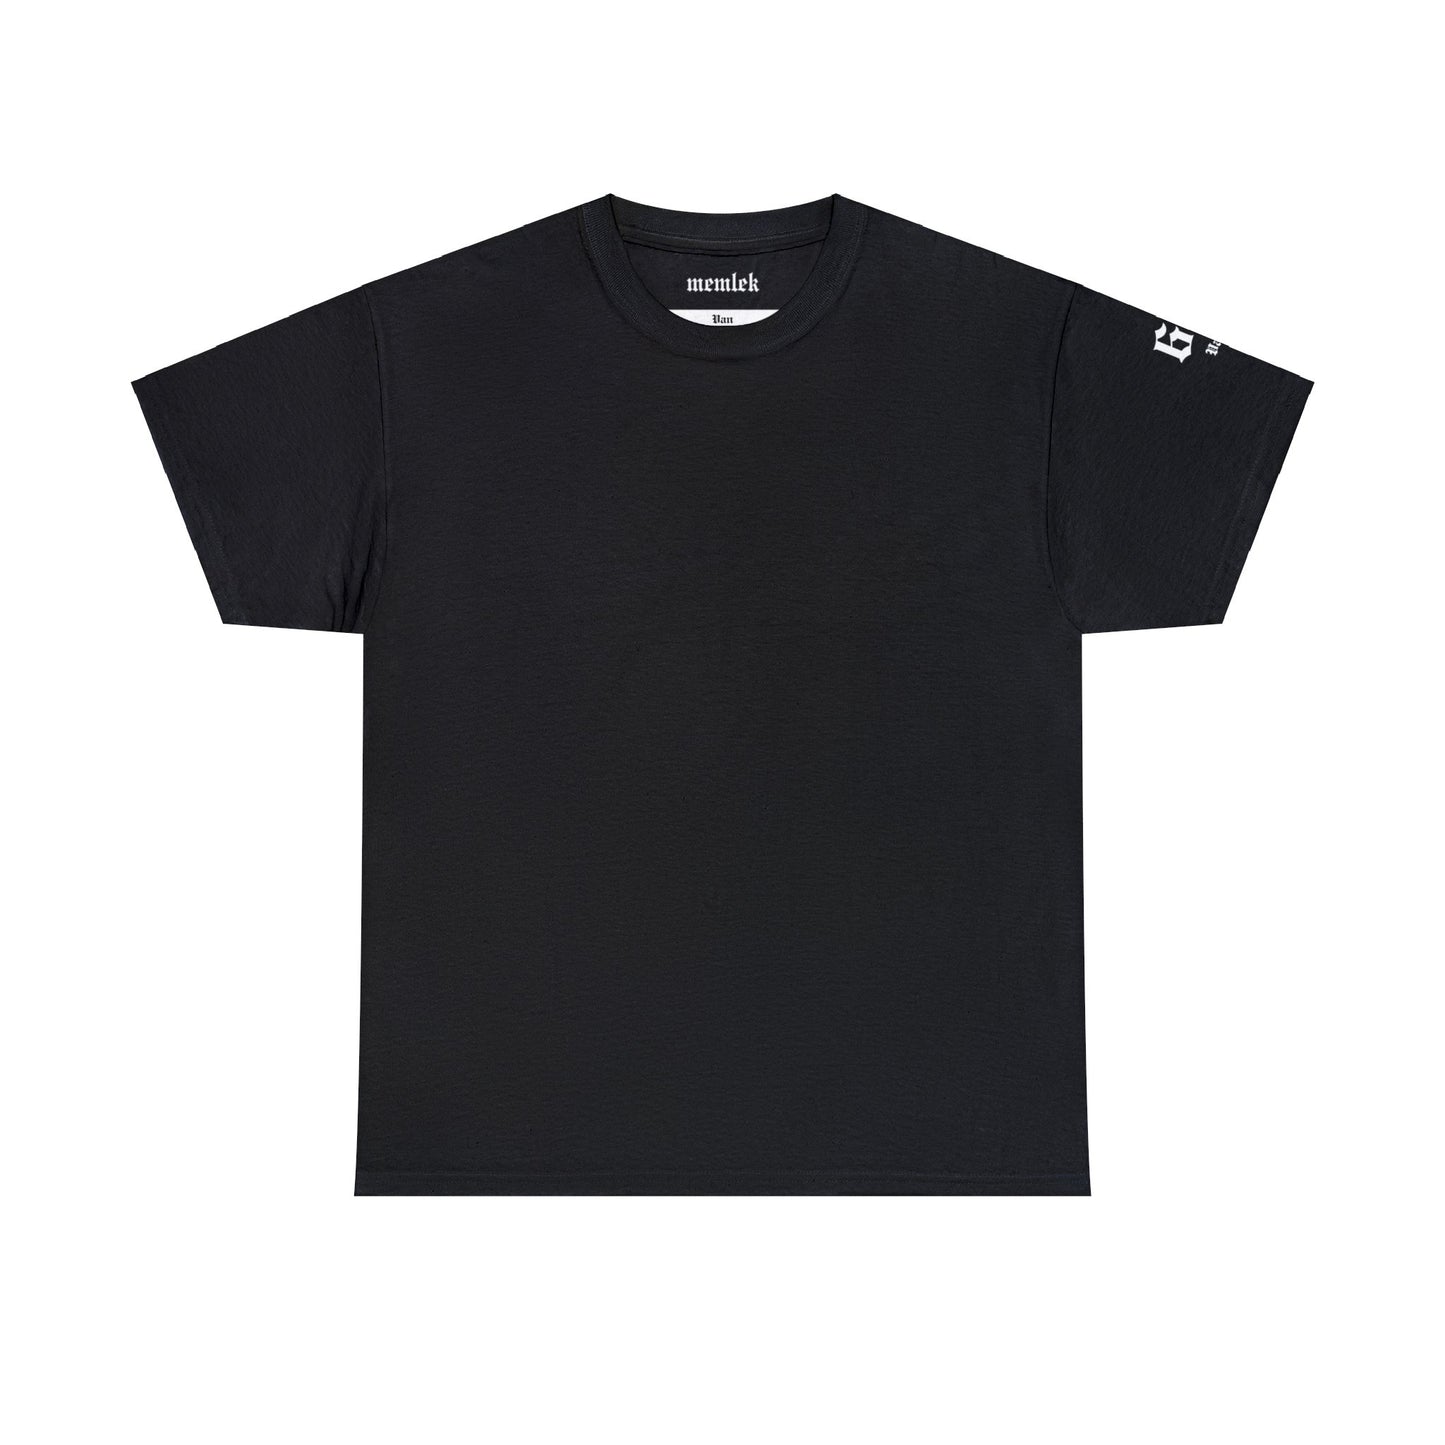 İlçem - 65 Van - T-Shirt - Back Print - Black